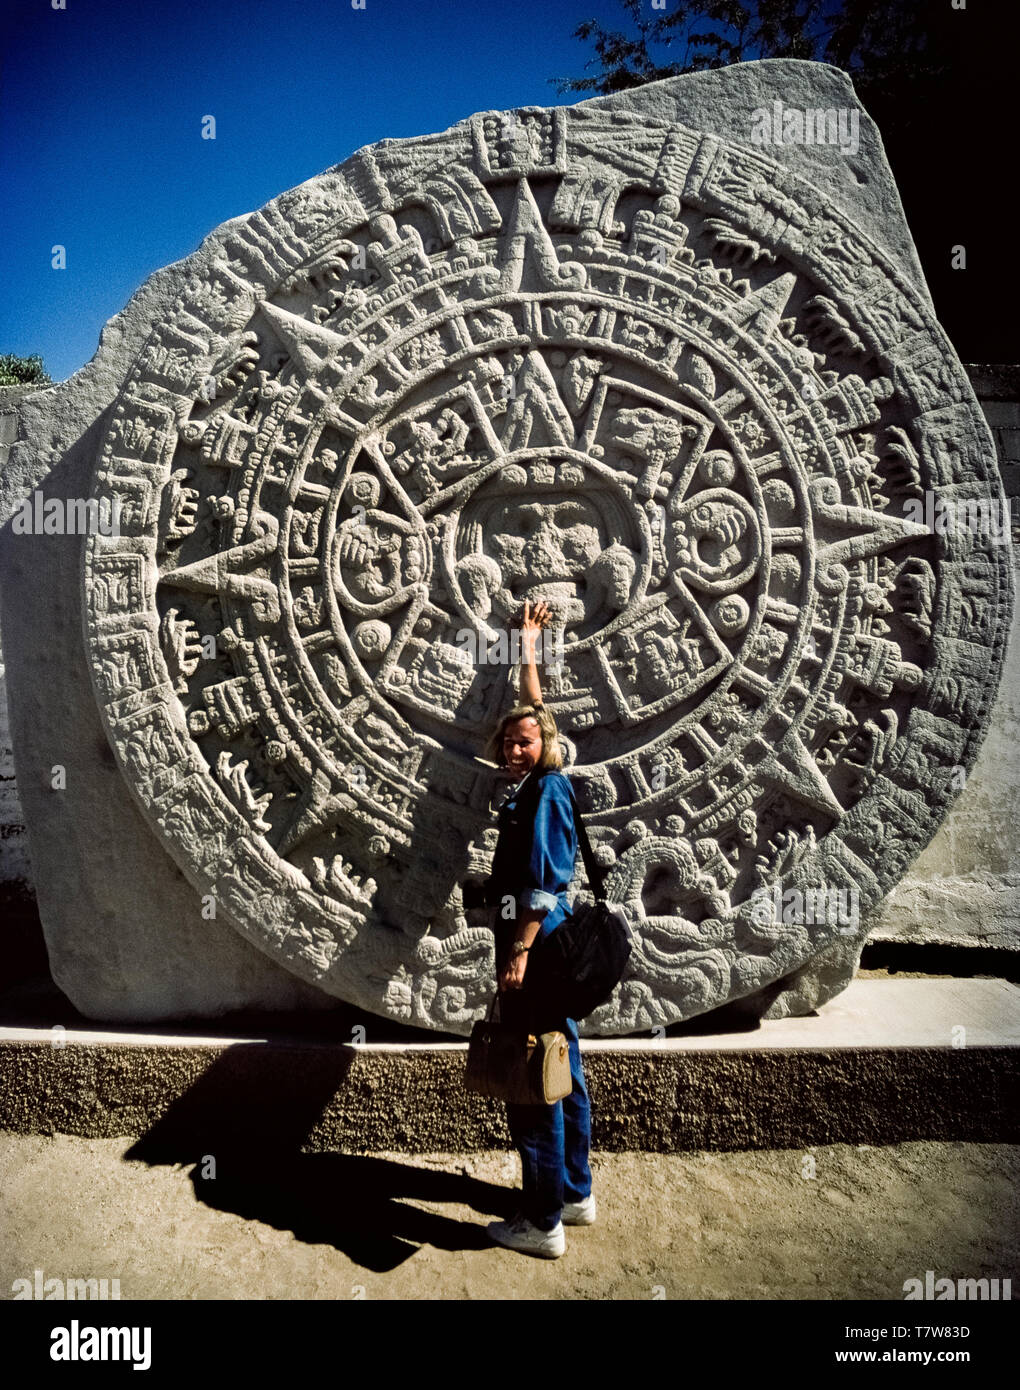 Una donna i punti turistici alla faccia del sole azteca dio che è il centro di questa replica di un messicano importante scoperta archeologica di una massiccia carving noto come il Calendario azteco pietra sul display in La Paz, la capitale della Baja California Sur in Messico, America del Nord. Chiamato anche l'Aztec pietra del sole, il basalto originale disco era trovato a Città del Messico nel 1790. I geroglifici sul monolito circolare riguardano la mitologia di ri-creazione del mondo Aztecan nel XVI secolo. Foto Stock